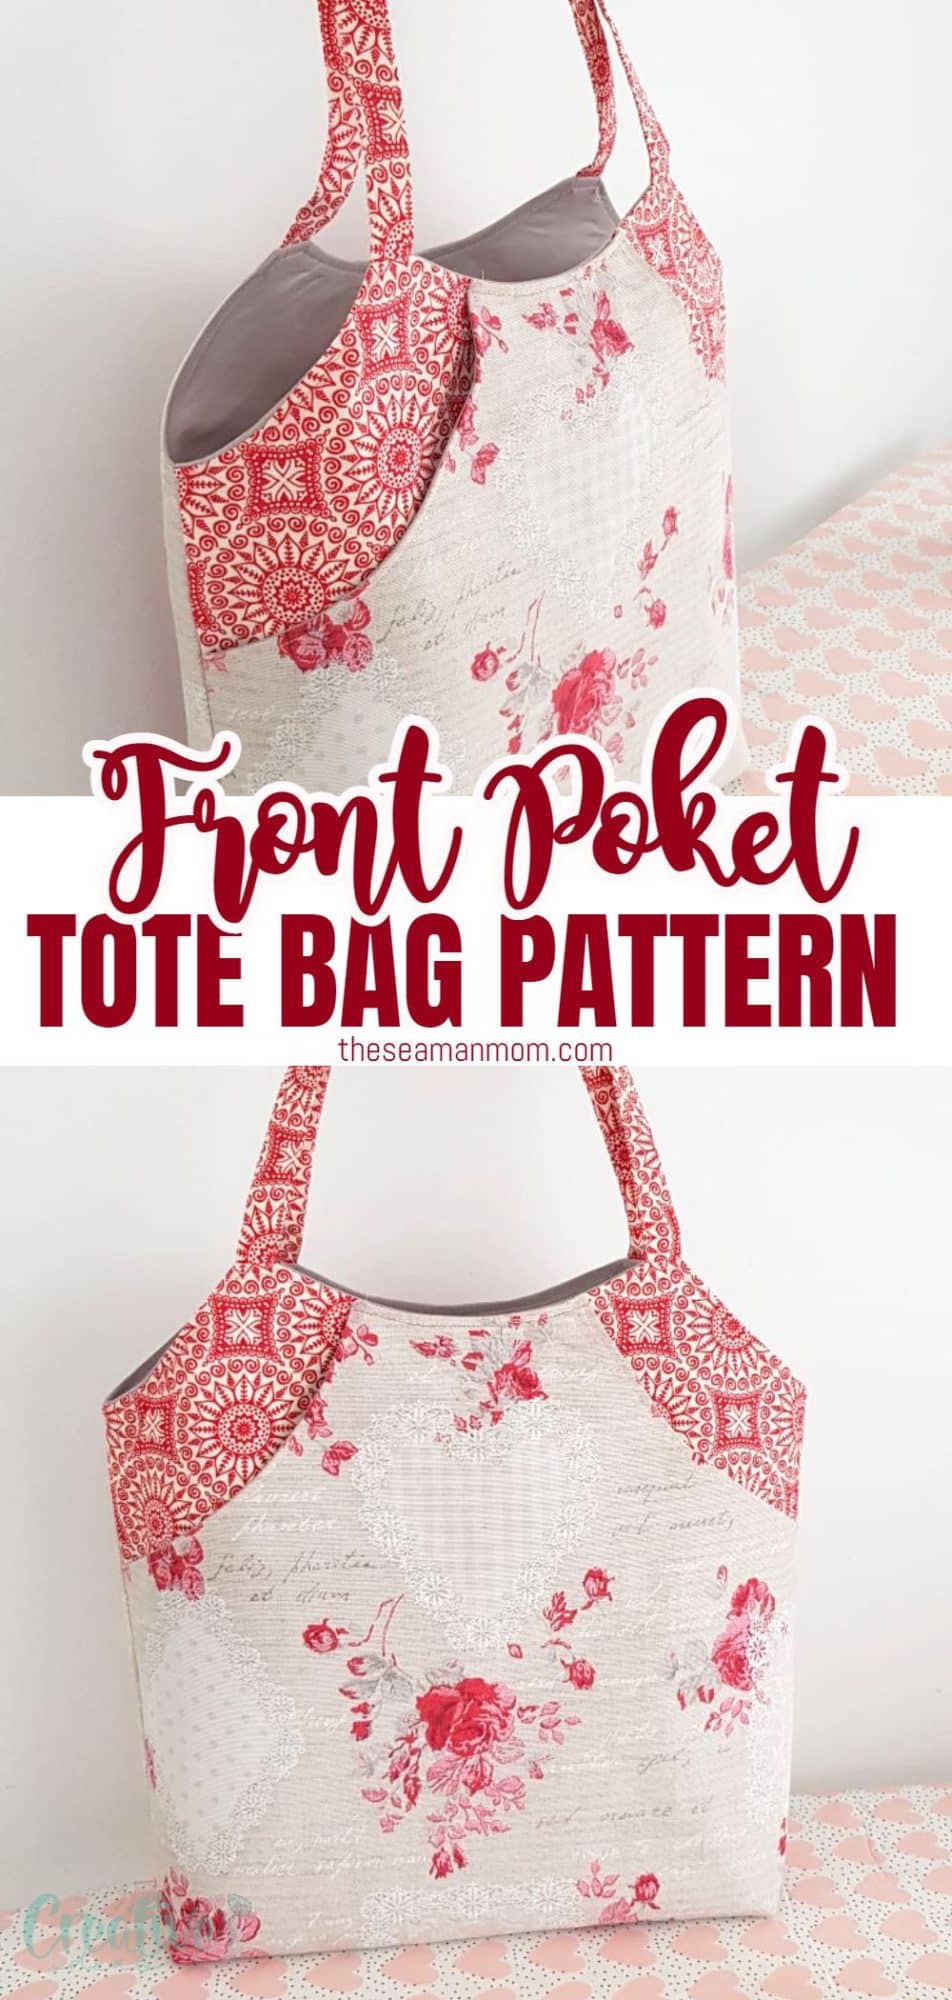 Deep front pocket tote bag pattern